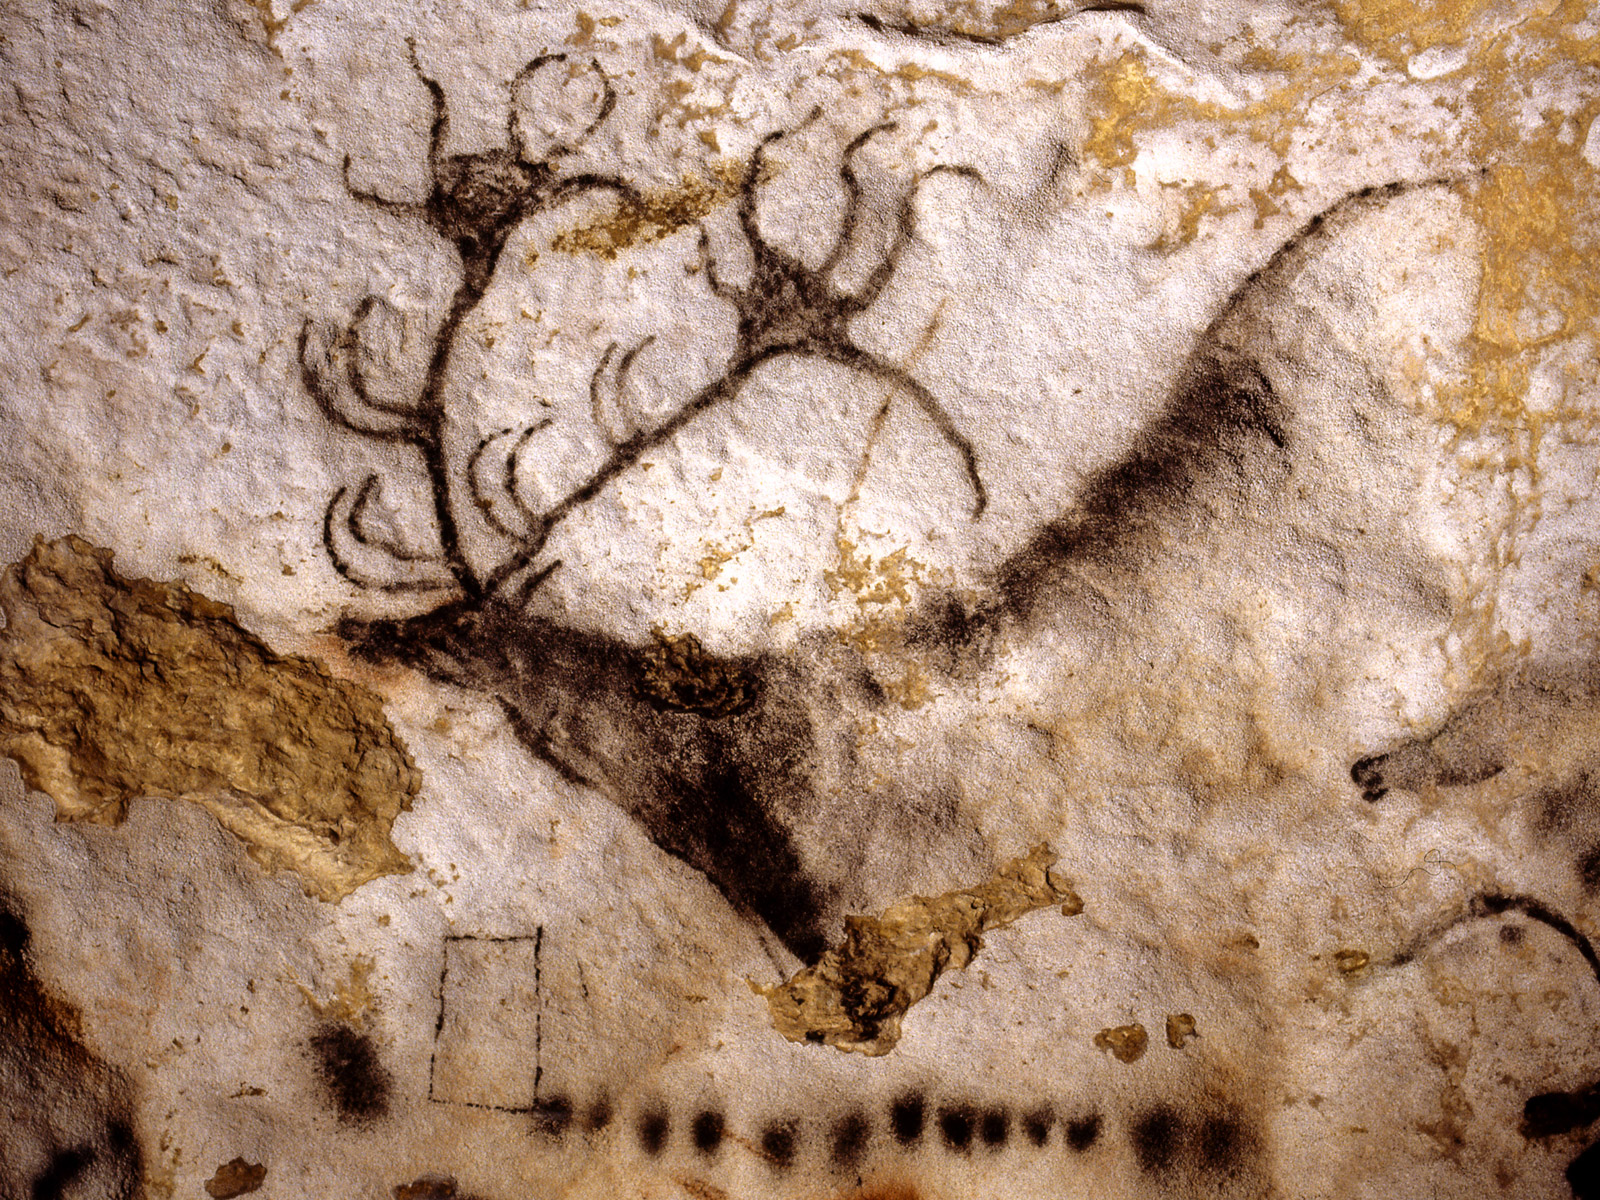 The Lascaux Ancient Cave Paintings